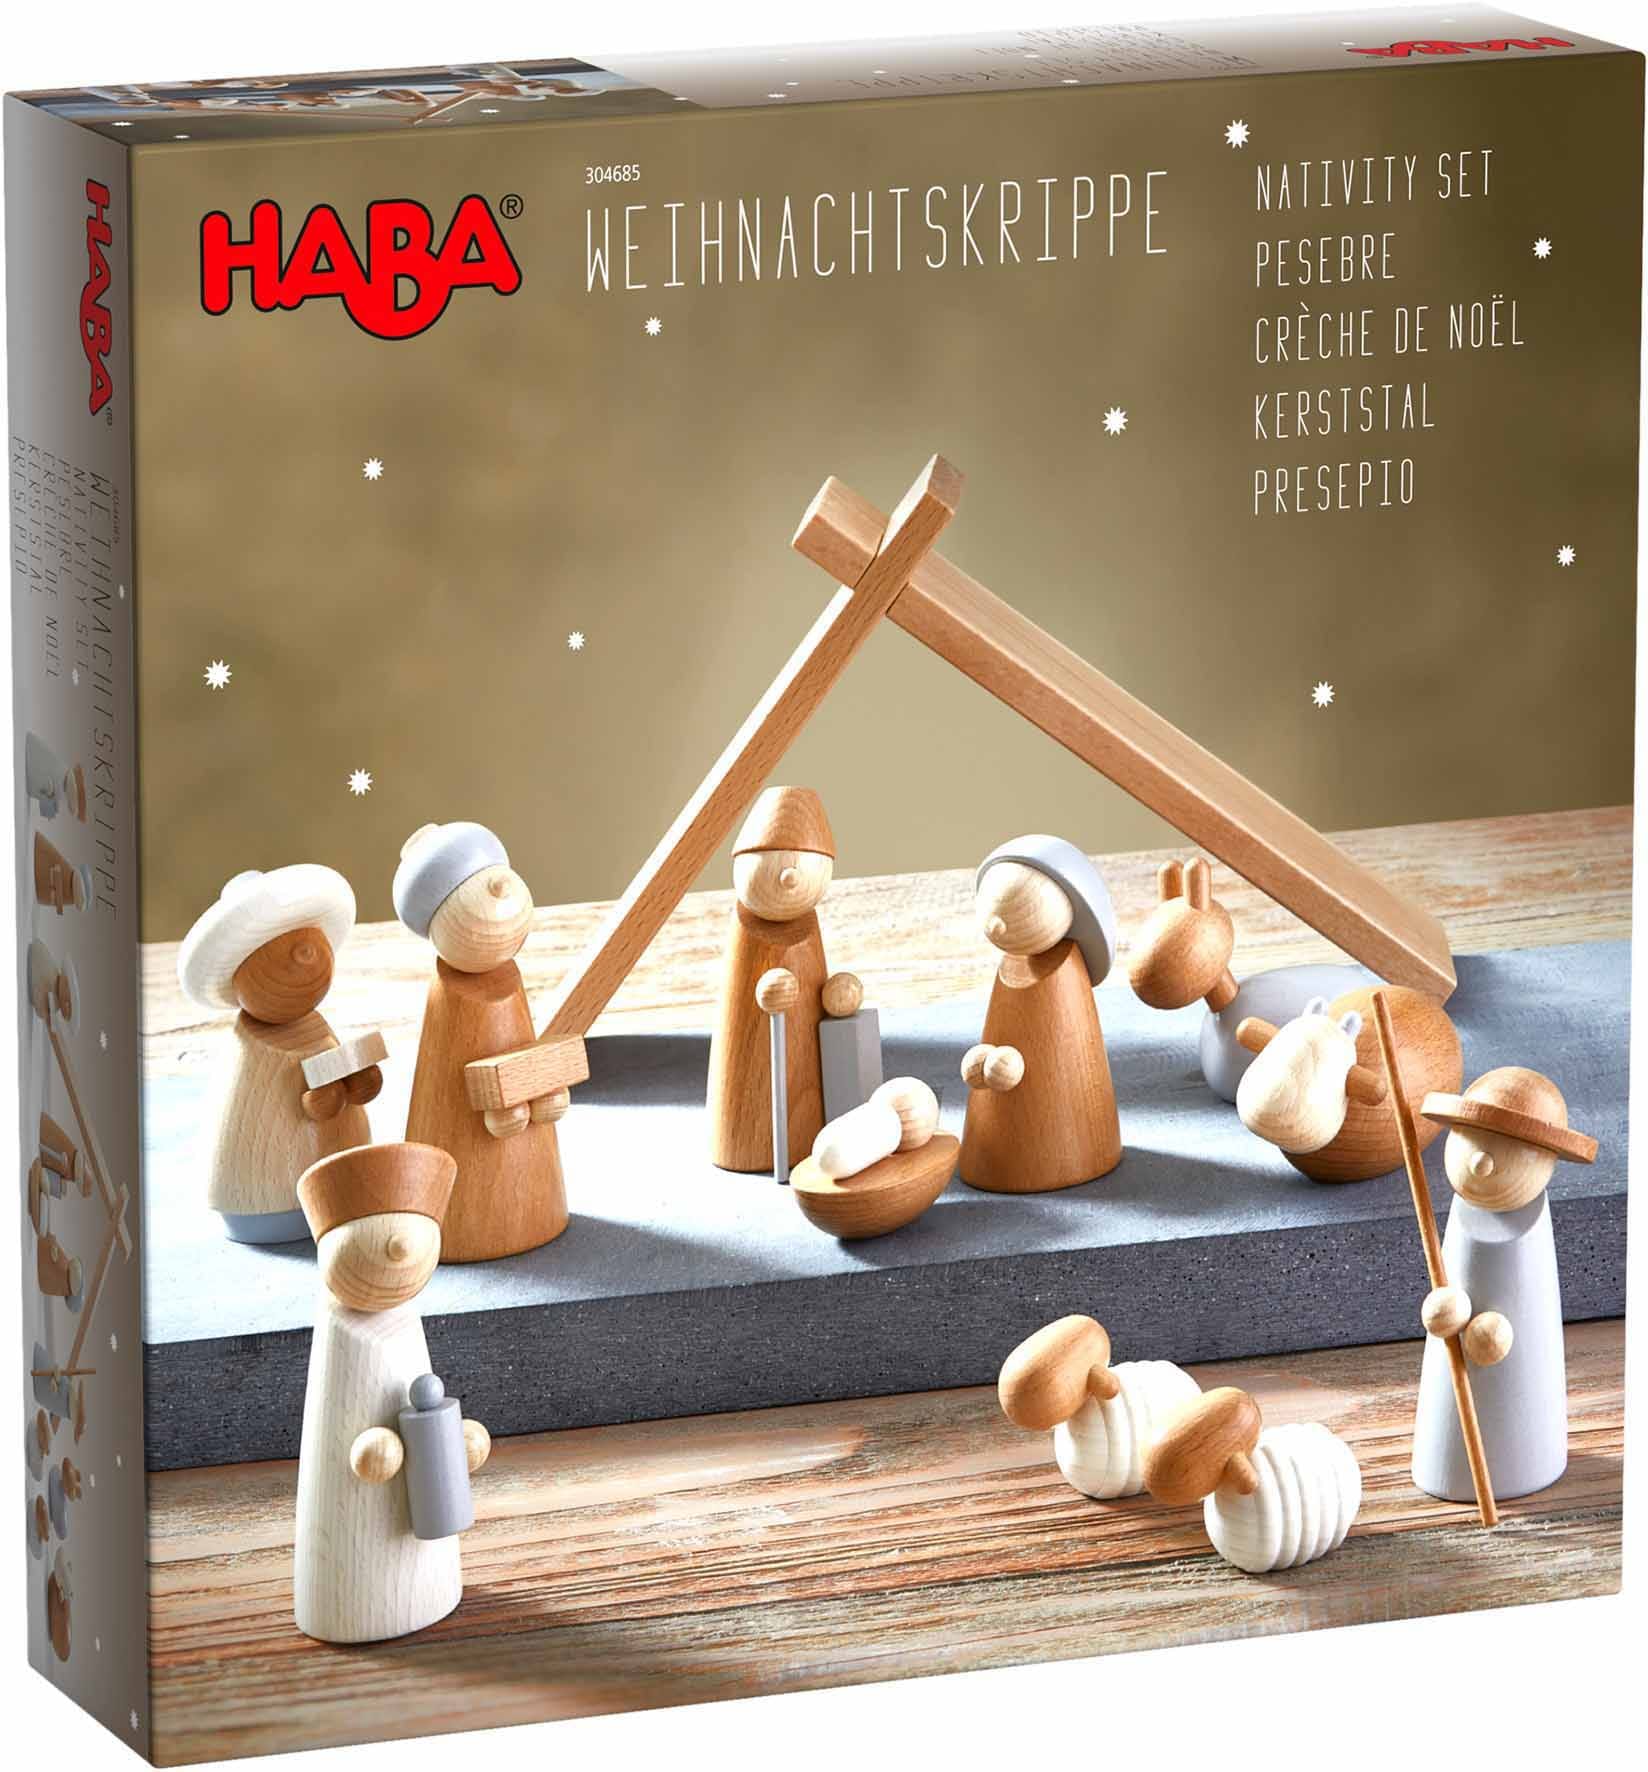 Haba Spielfigur »Weihnachtskrippe«, ; Made in Germany